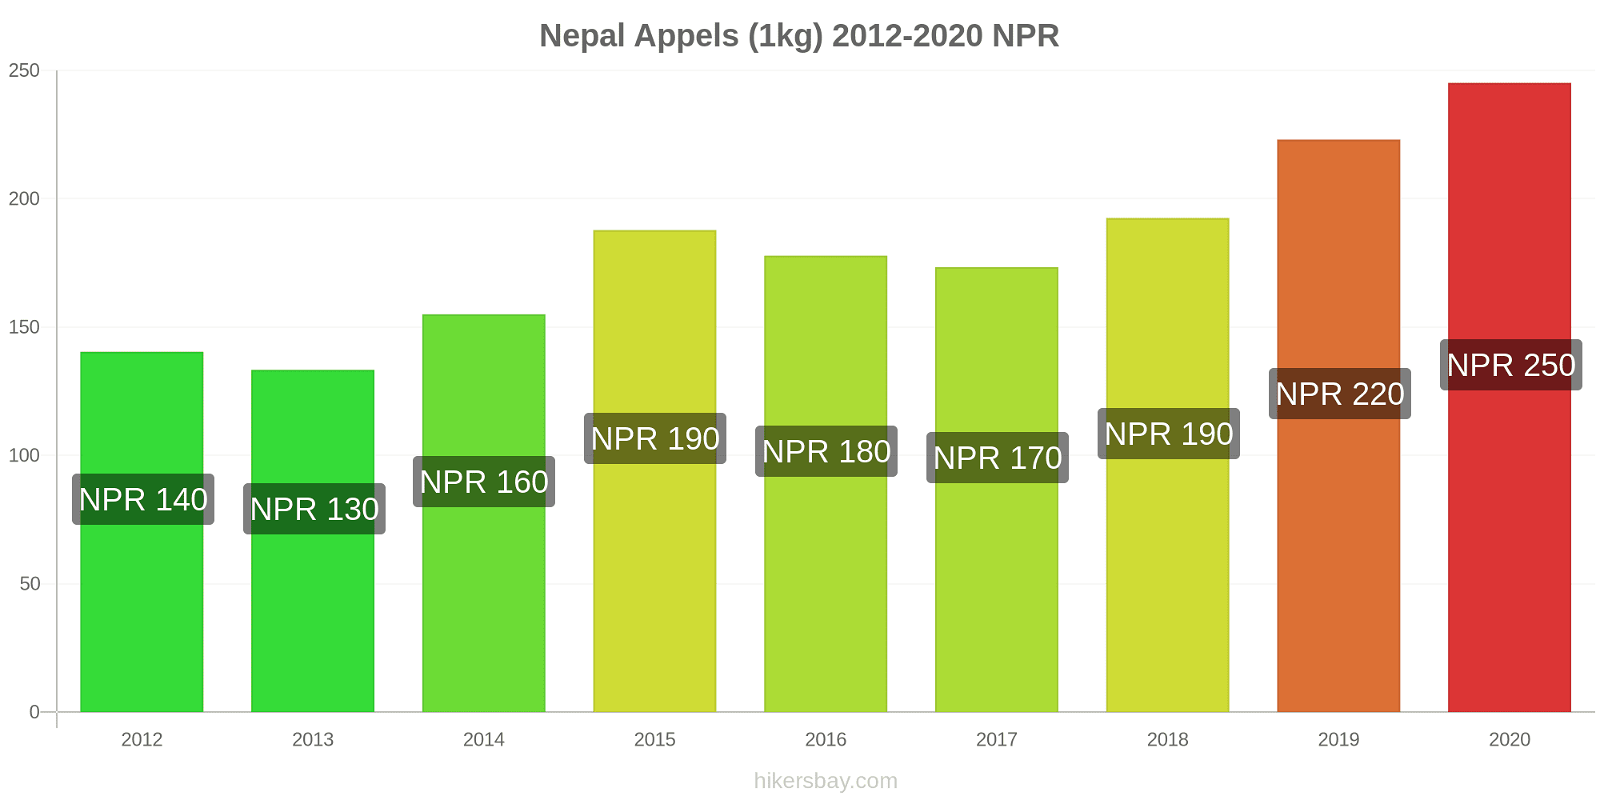 Nepal prijswijzigingen Appels (1kg) hikersbay.com